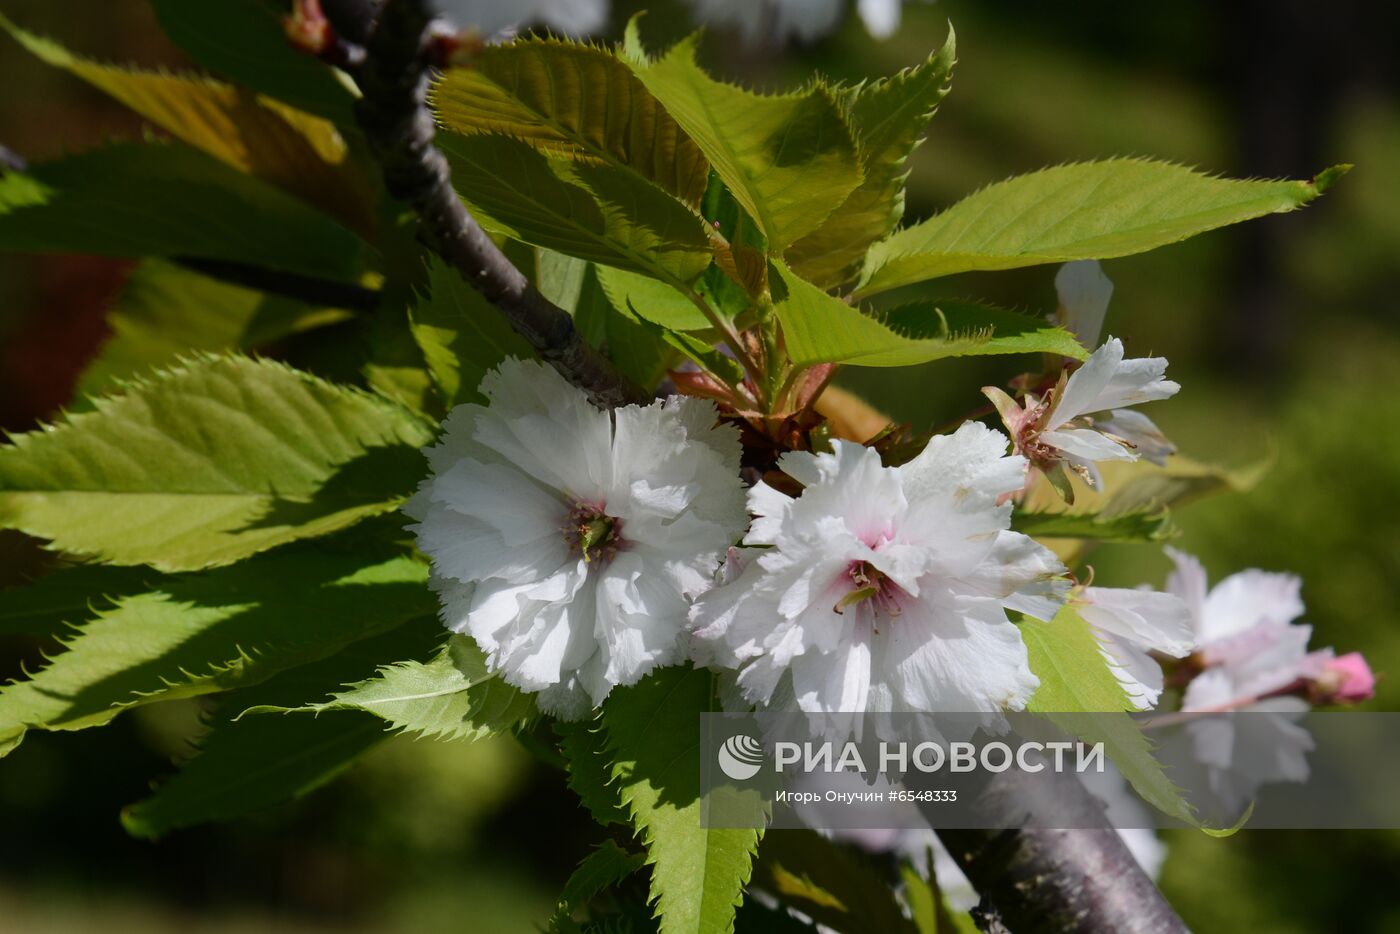 Цветение плодовых деревьев в парке "Дендрарий" в Сочи